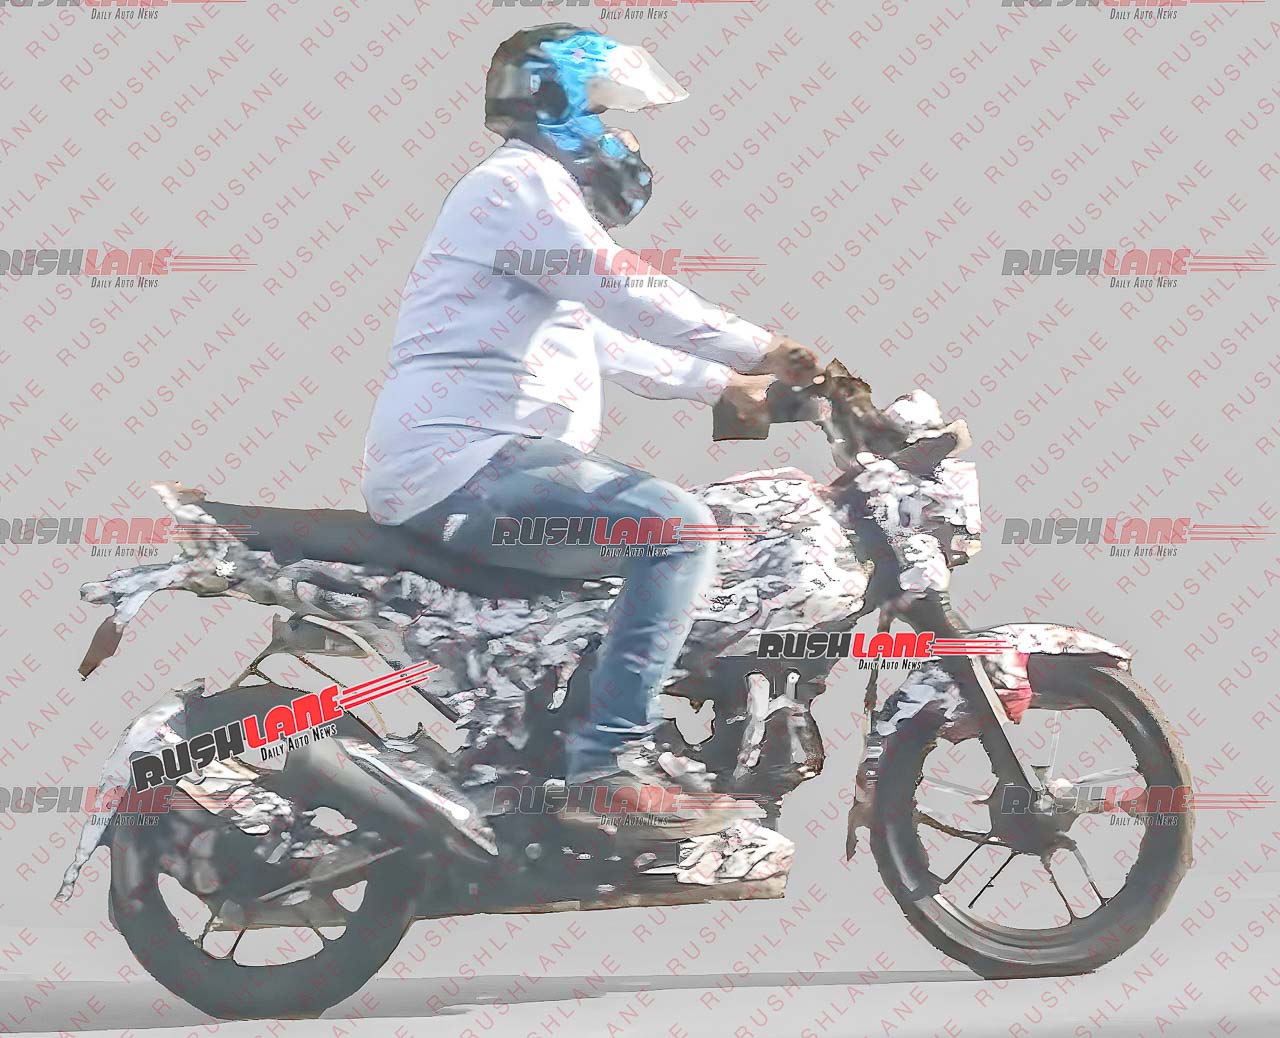 New Bajaj CNG Motorcycle Spied